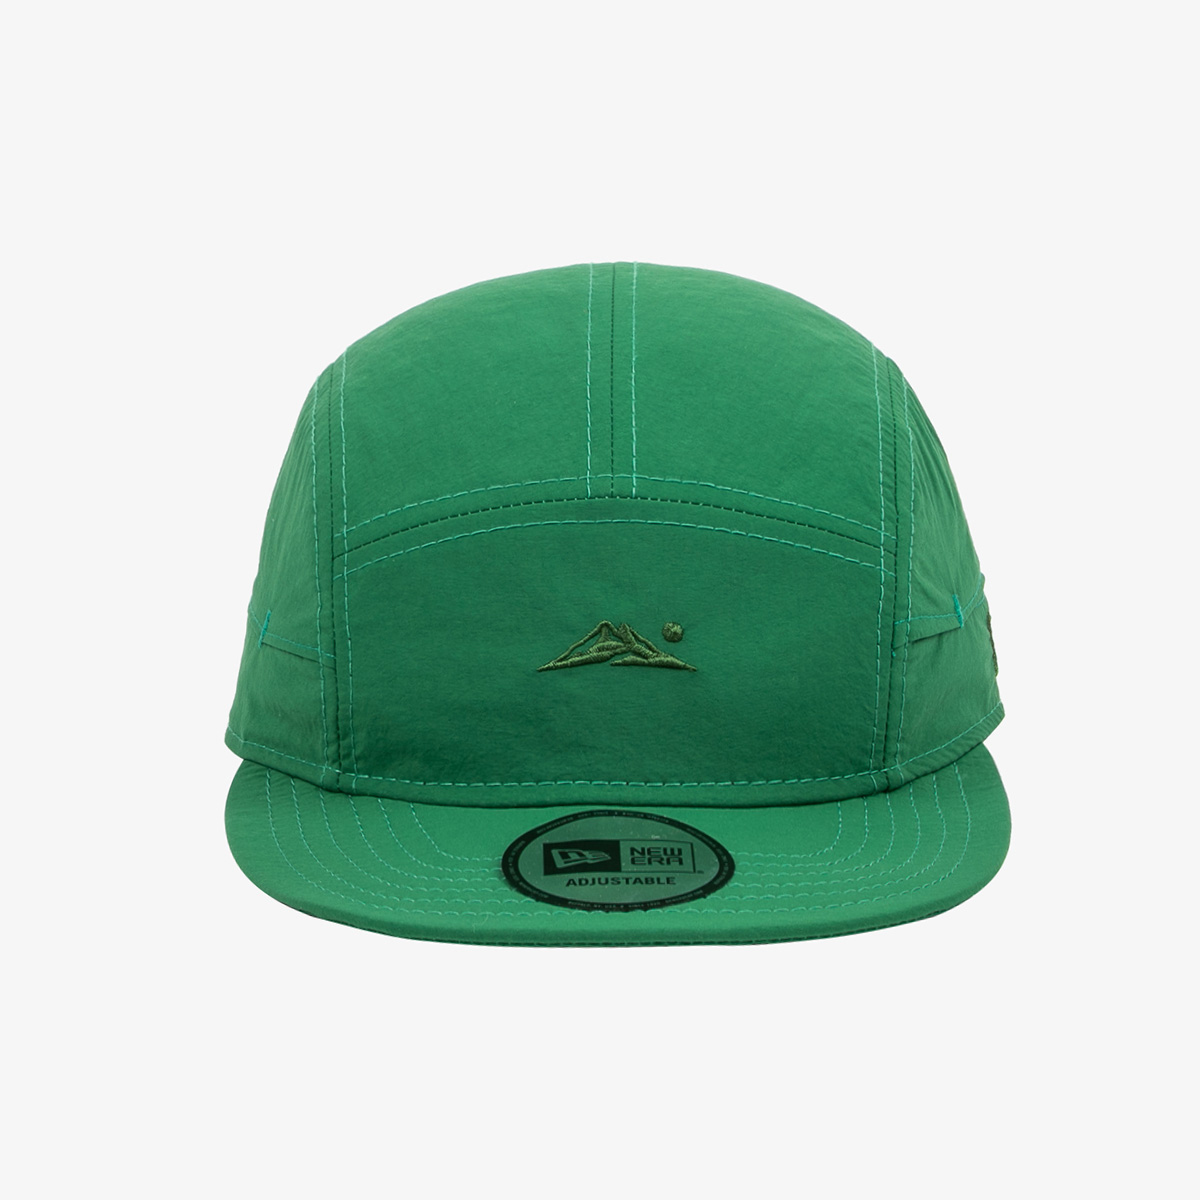 New Era Green Packable Camper Cap